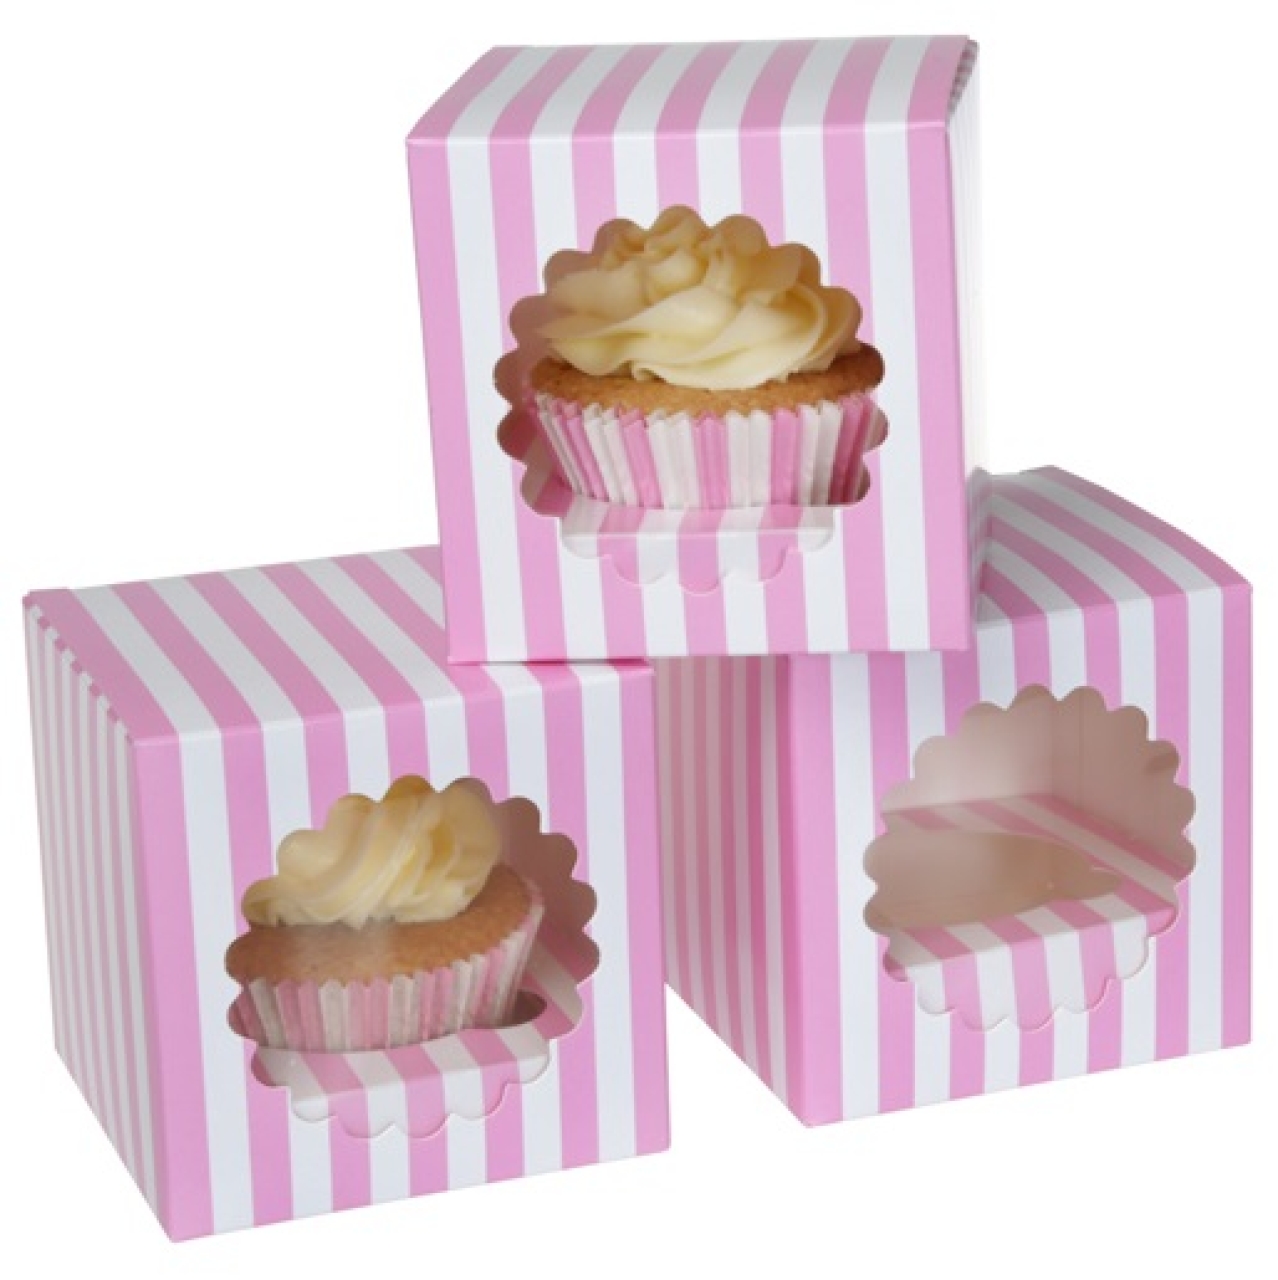 HoM Cupcake Box für 1 Cupcake, rosa, weiß, gestreift